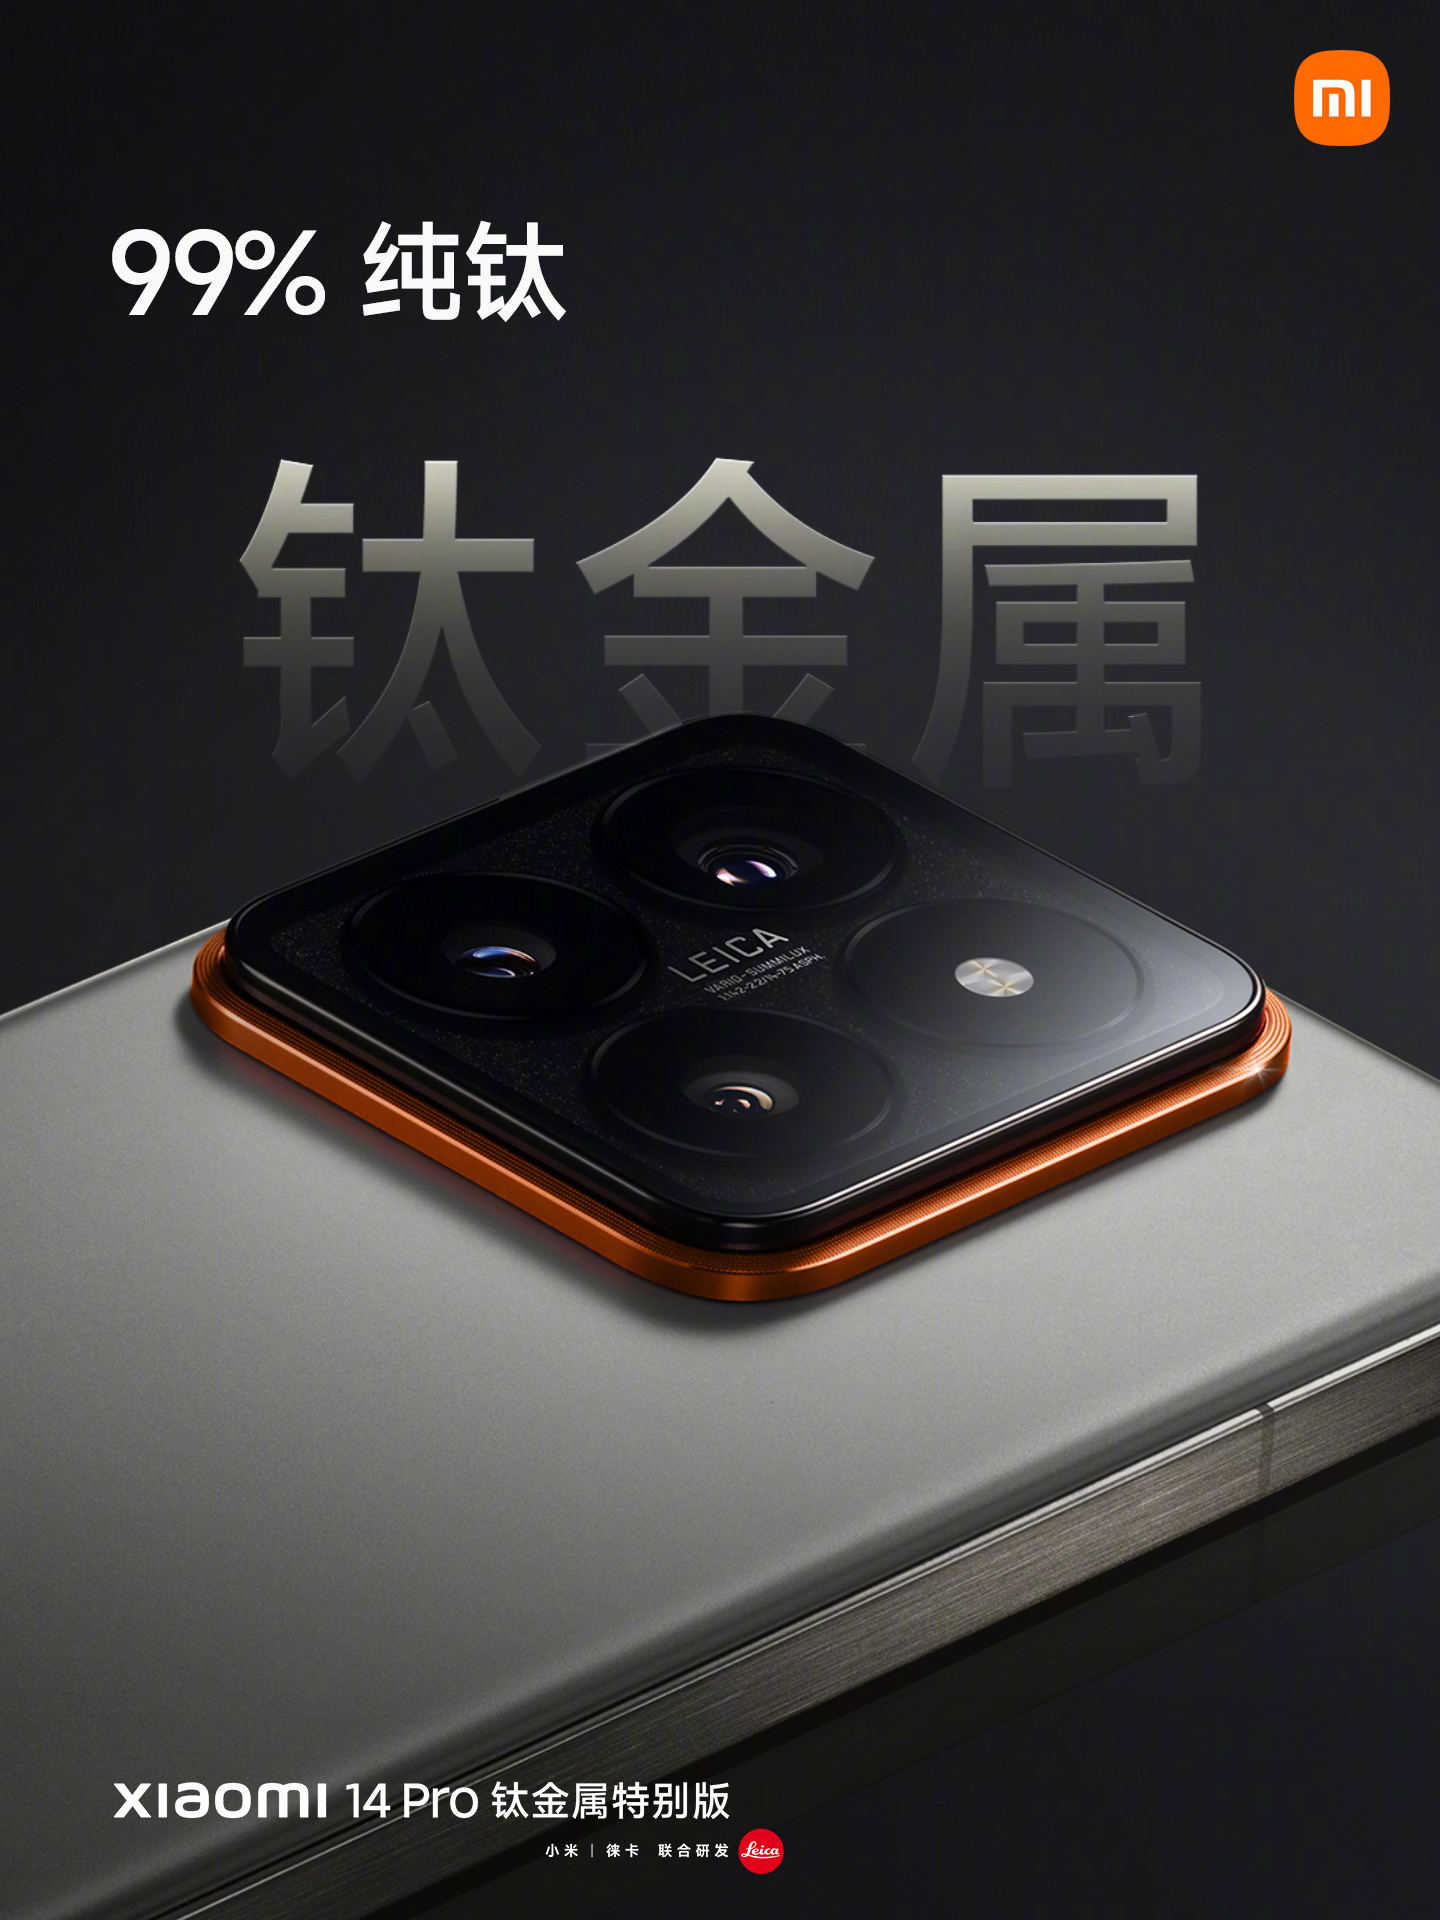 Xiaomi 14 Pro to feature titanium alloy body 